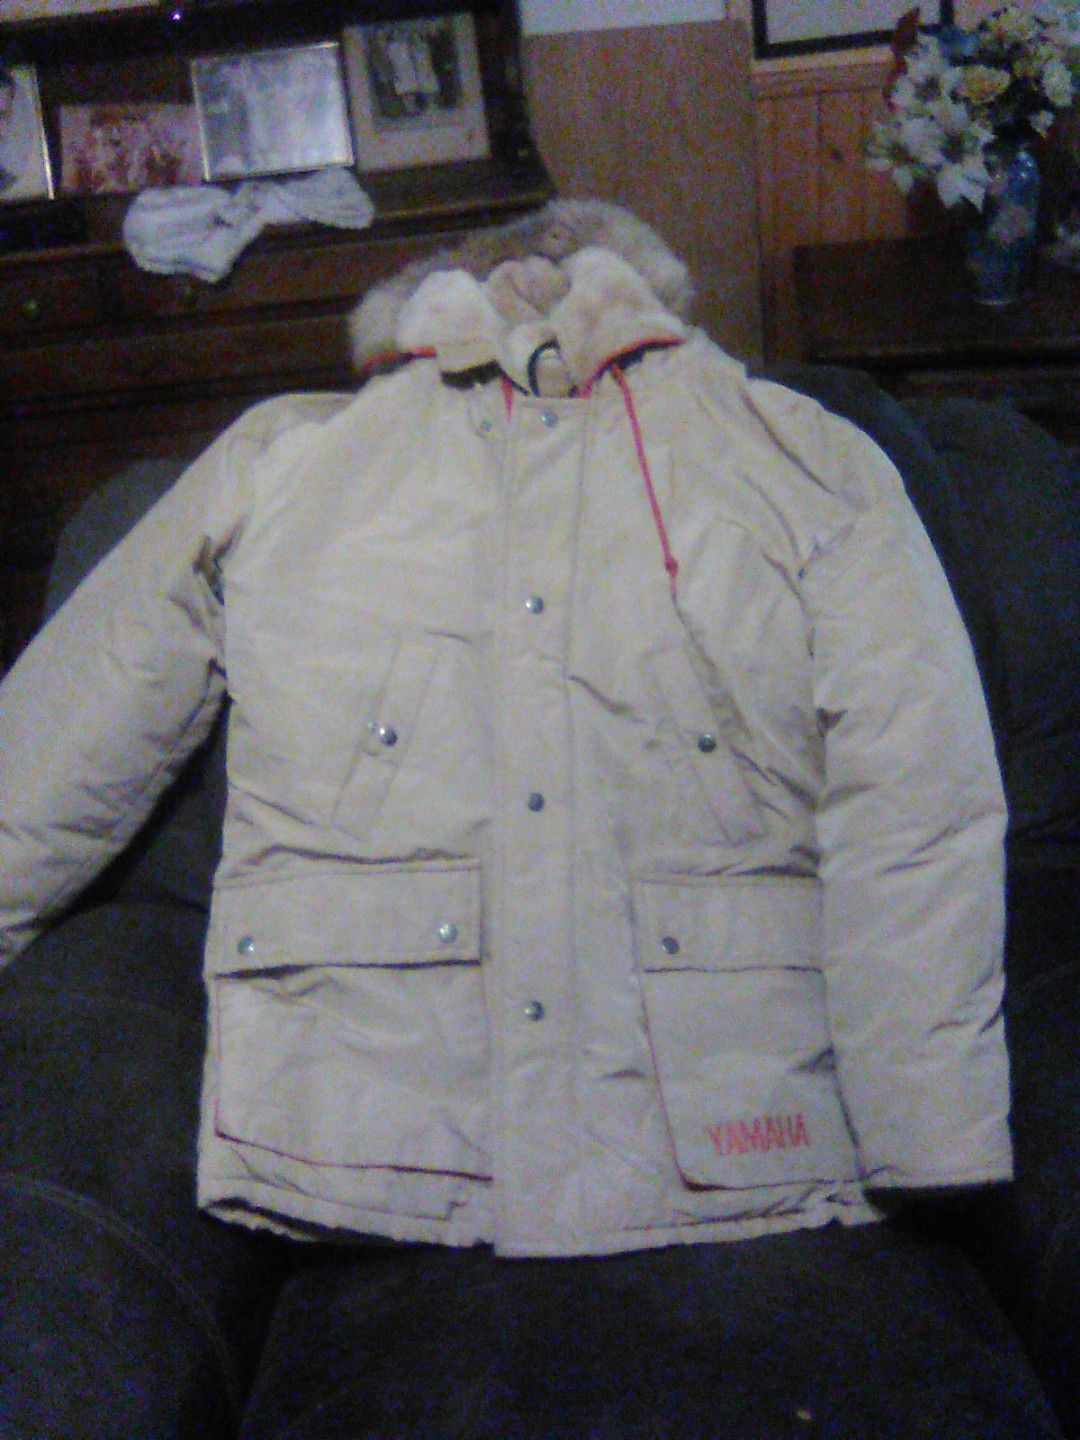 Medium Yamaha jacket